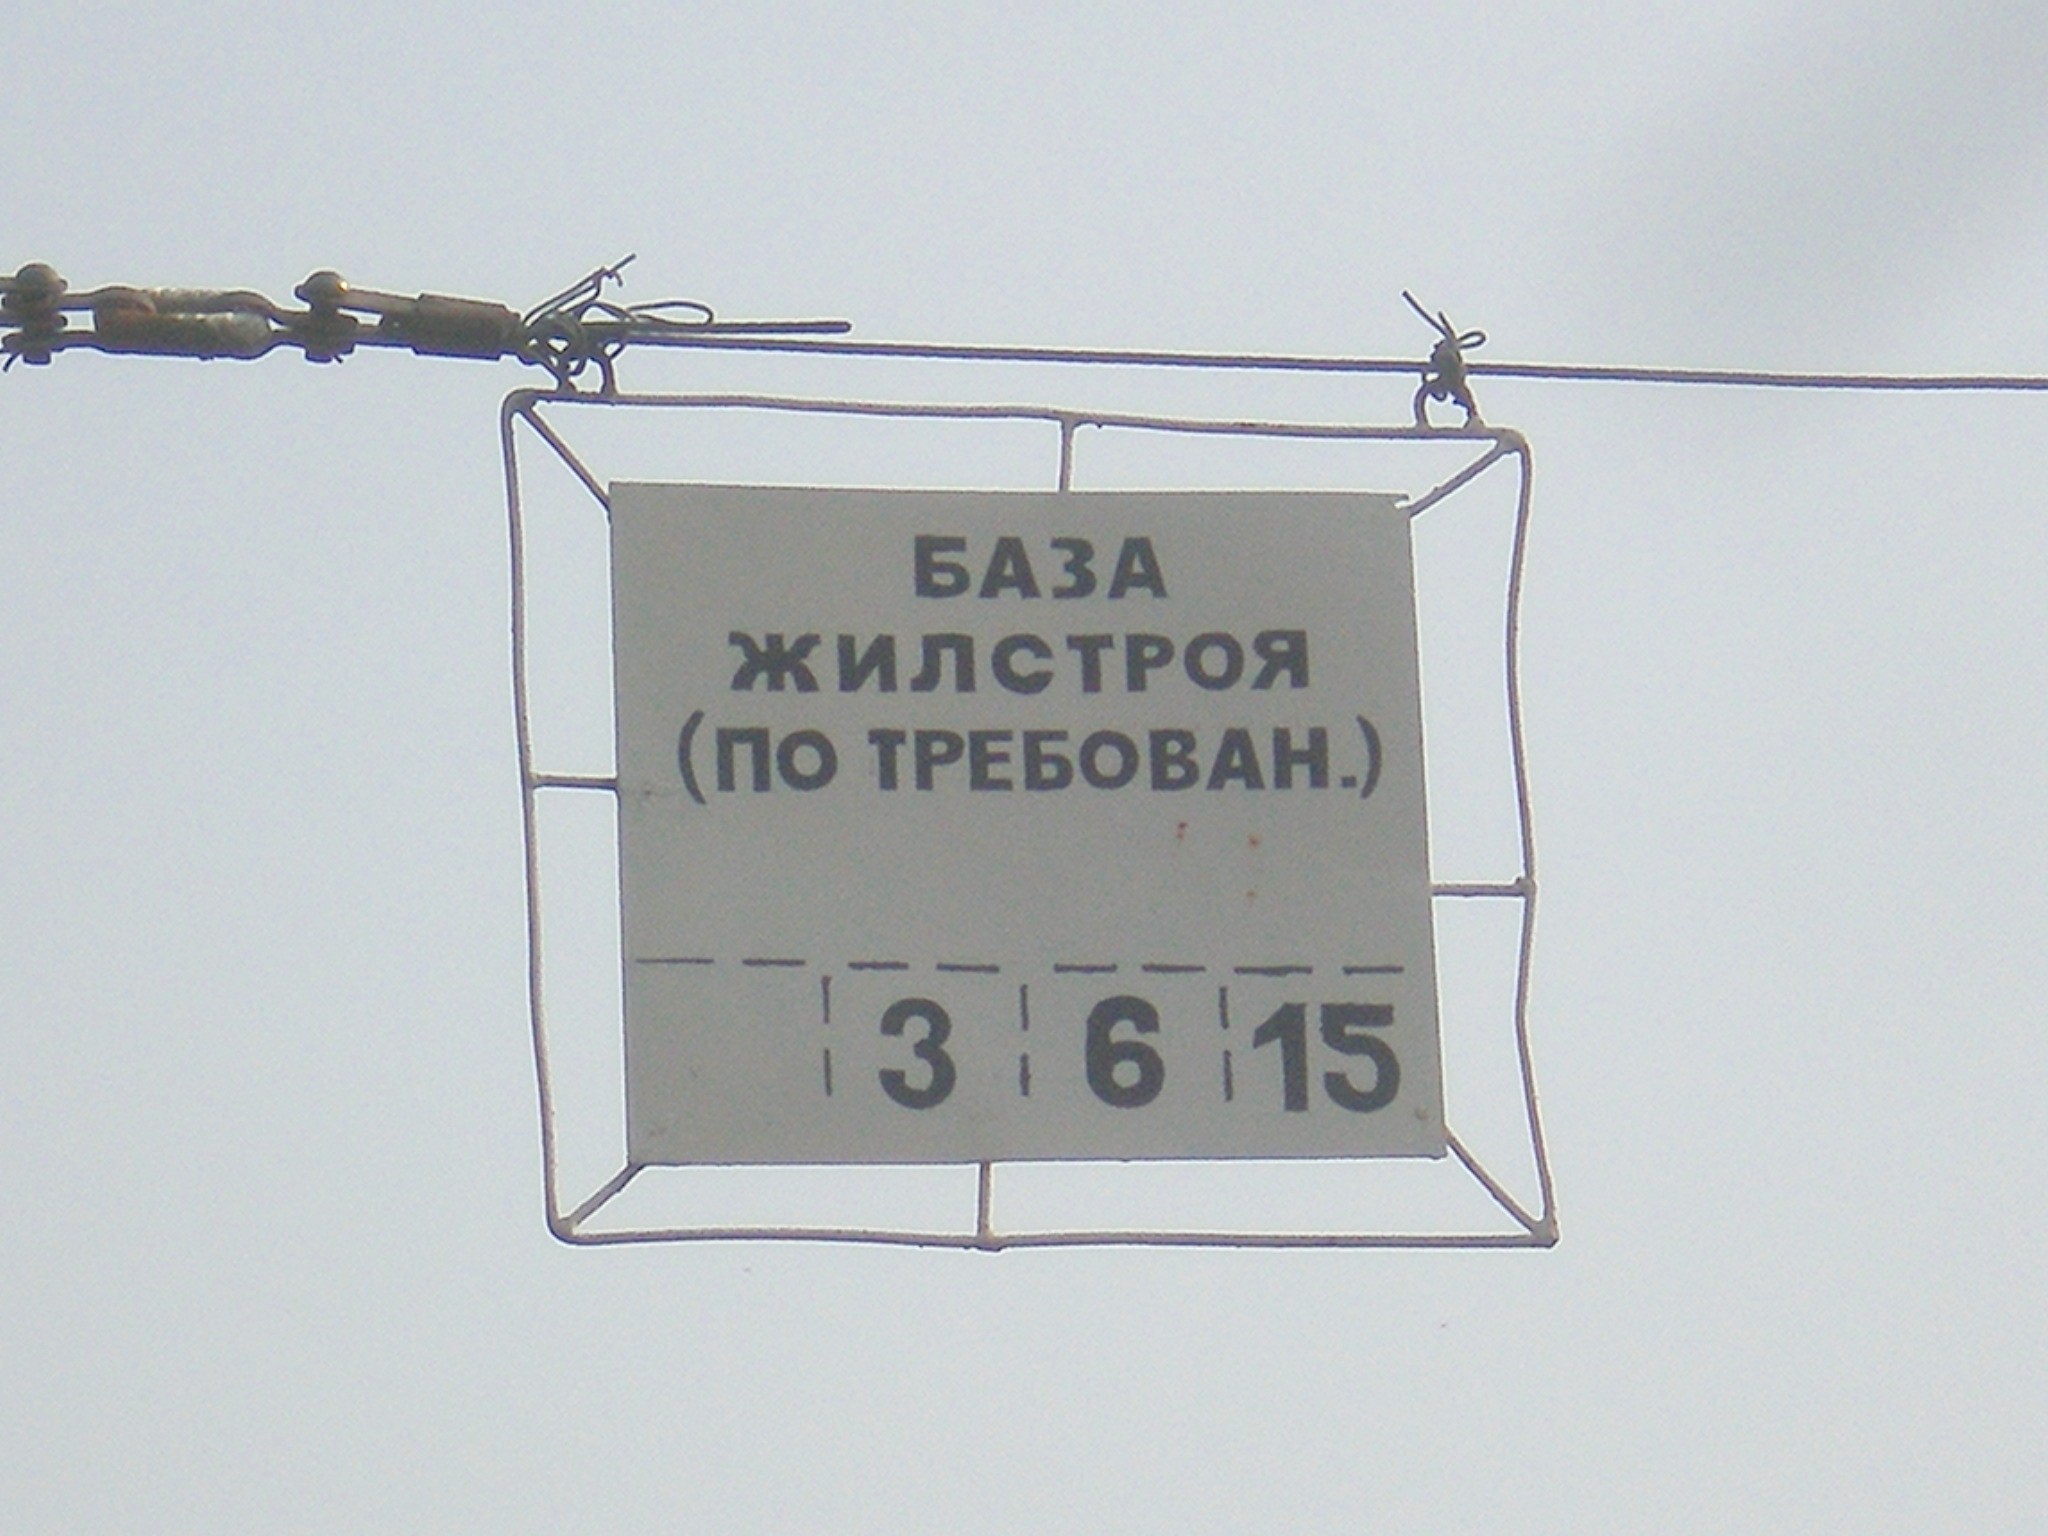 Тверской трамвай  —  фотографии, сделанные в 2009 году (часть 9)